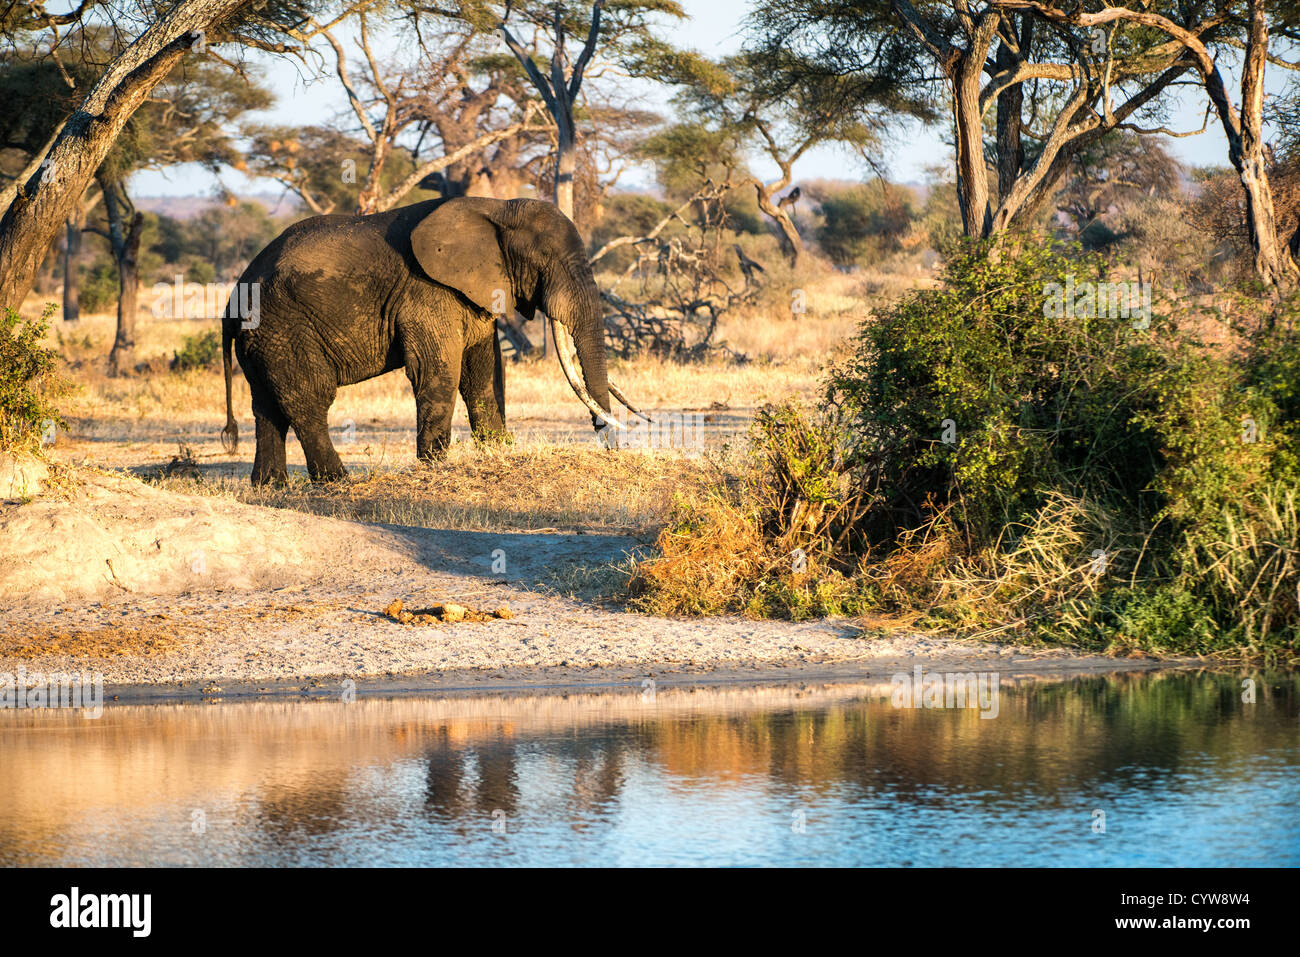 Der Tarangire National Park, Tansania - Ein erwachsener Elefant mit sehr langen Stoßzähnen neben einem Wasserloch in der späten Nachmittagssonne in der Tarangire National Park im Norden von Tansania, nicht weit von den Ngorongoro Krater und die Serengeti. Stockfoto